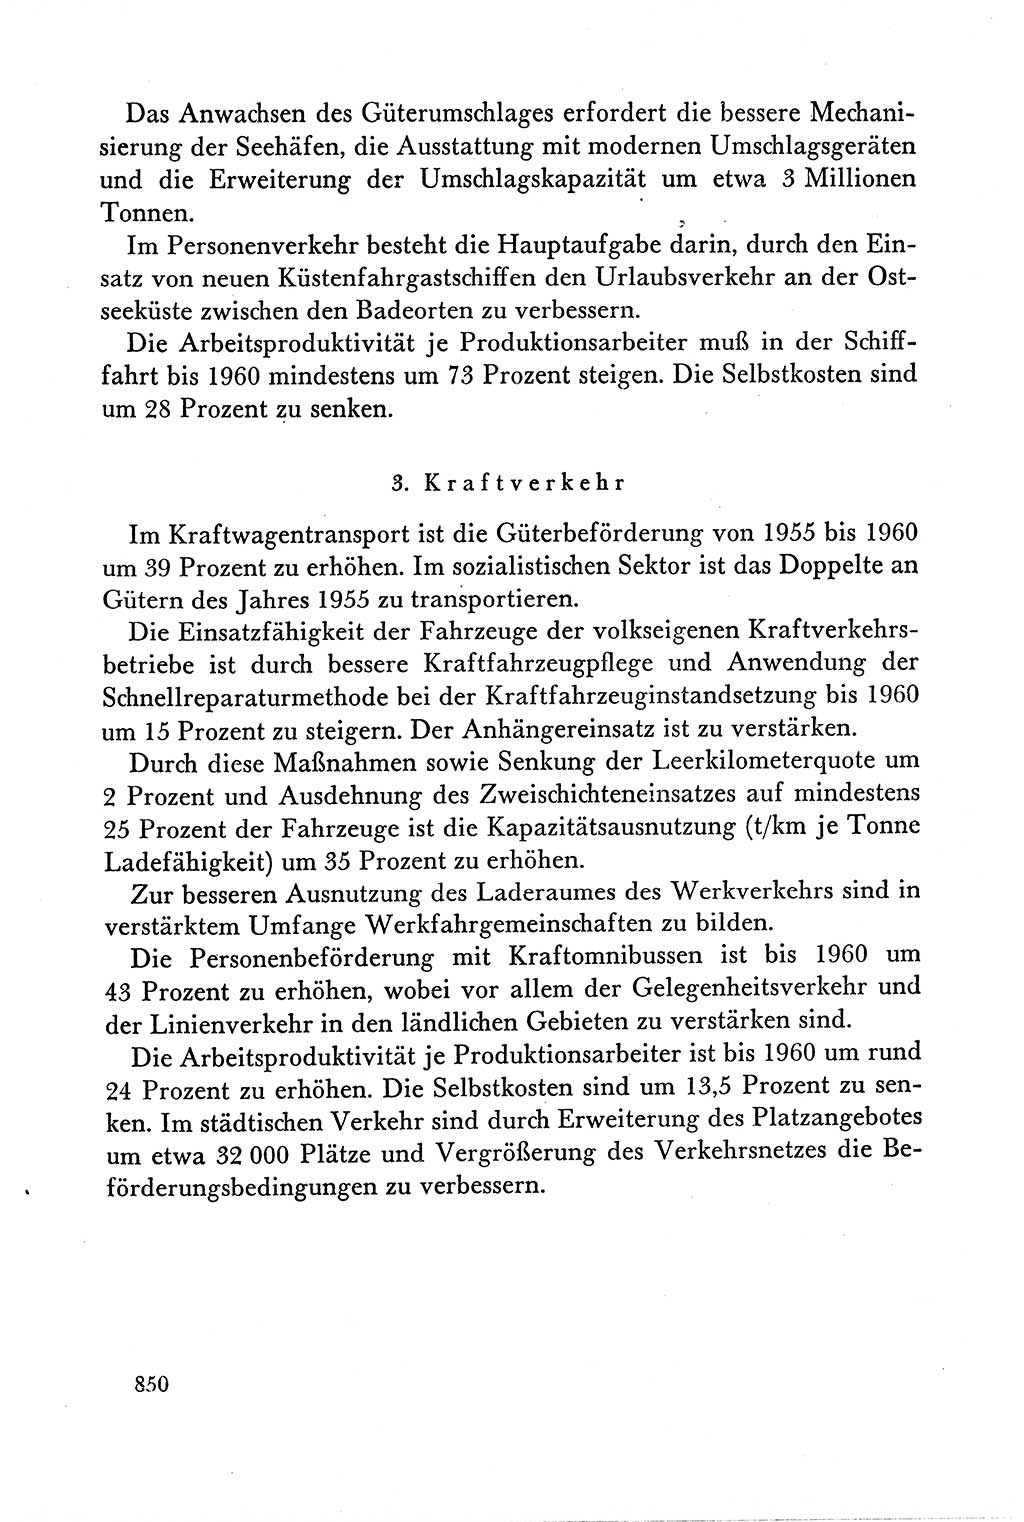 Dokumente der Sozialistischen Einheitspartei Deutschlands (SED) [Deutsche Demokratische Republik (DDR)] 1958-1959, Seite 850 (Dok. SED DDR 1958-1959, S. 850)